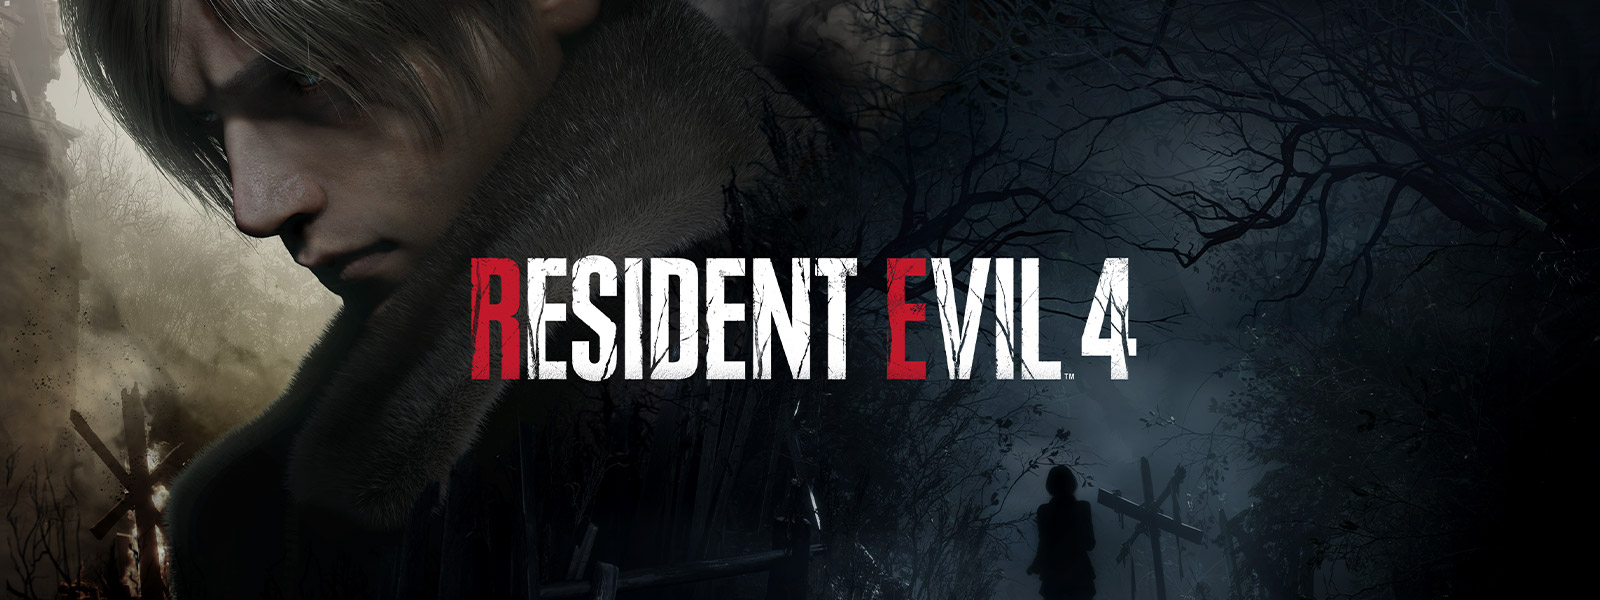 Resident Evil 4, mężczyzna z siwymi włosami uroczyście odwraca się, gdy kobieta idzie ciemną, przerażającą leśną ścieżką.